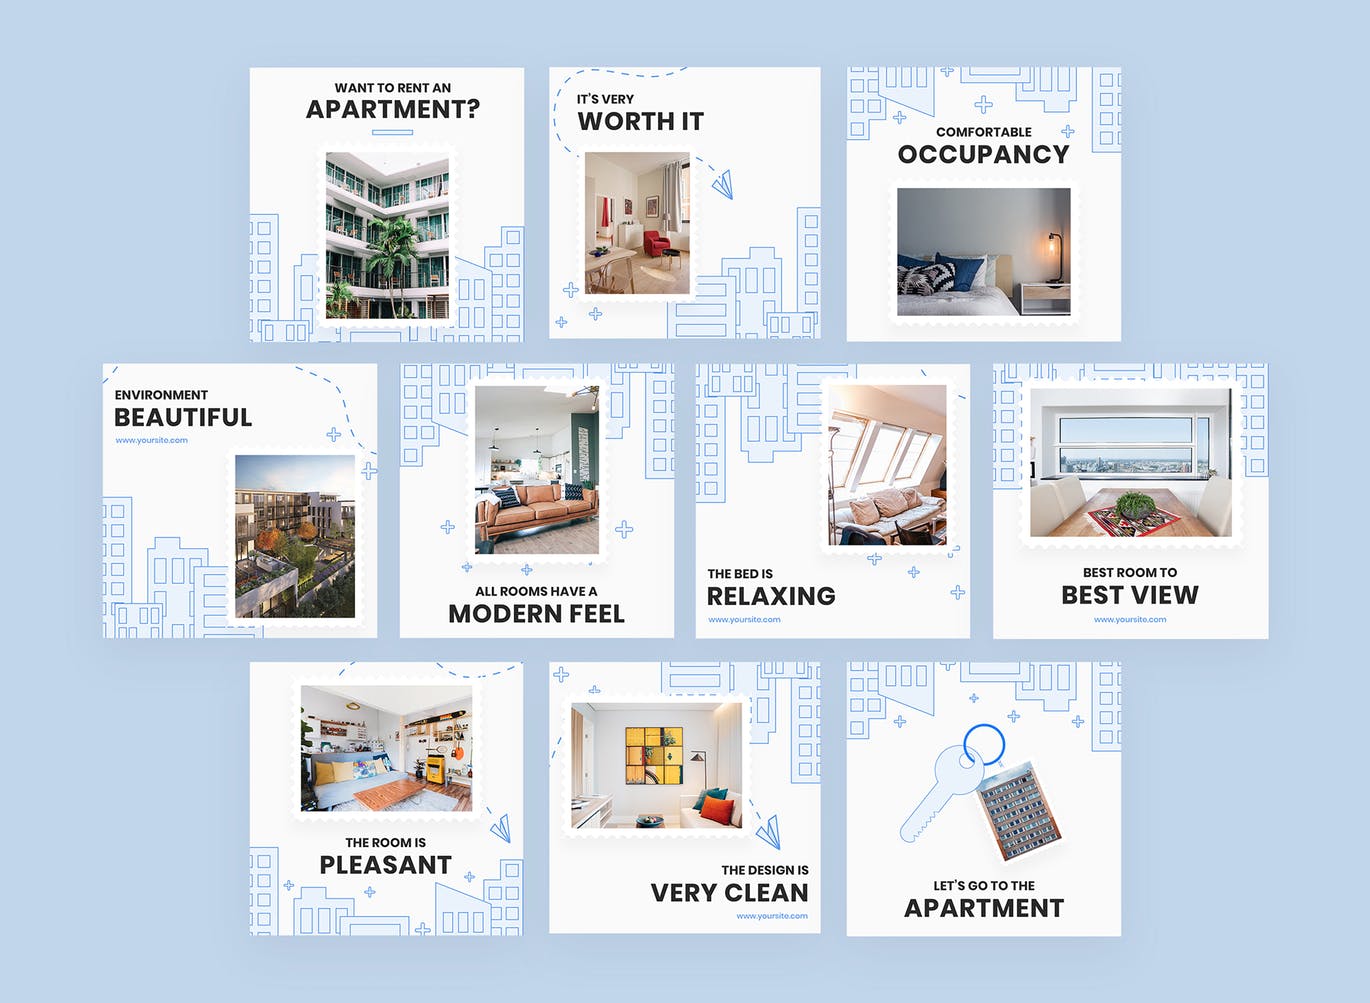 星级酒店社交媒体信息流推广设计素材包 Duplex – Instagram Feeds Pack插图(1)